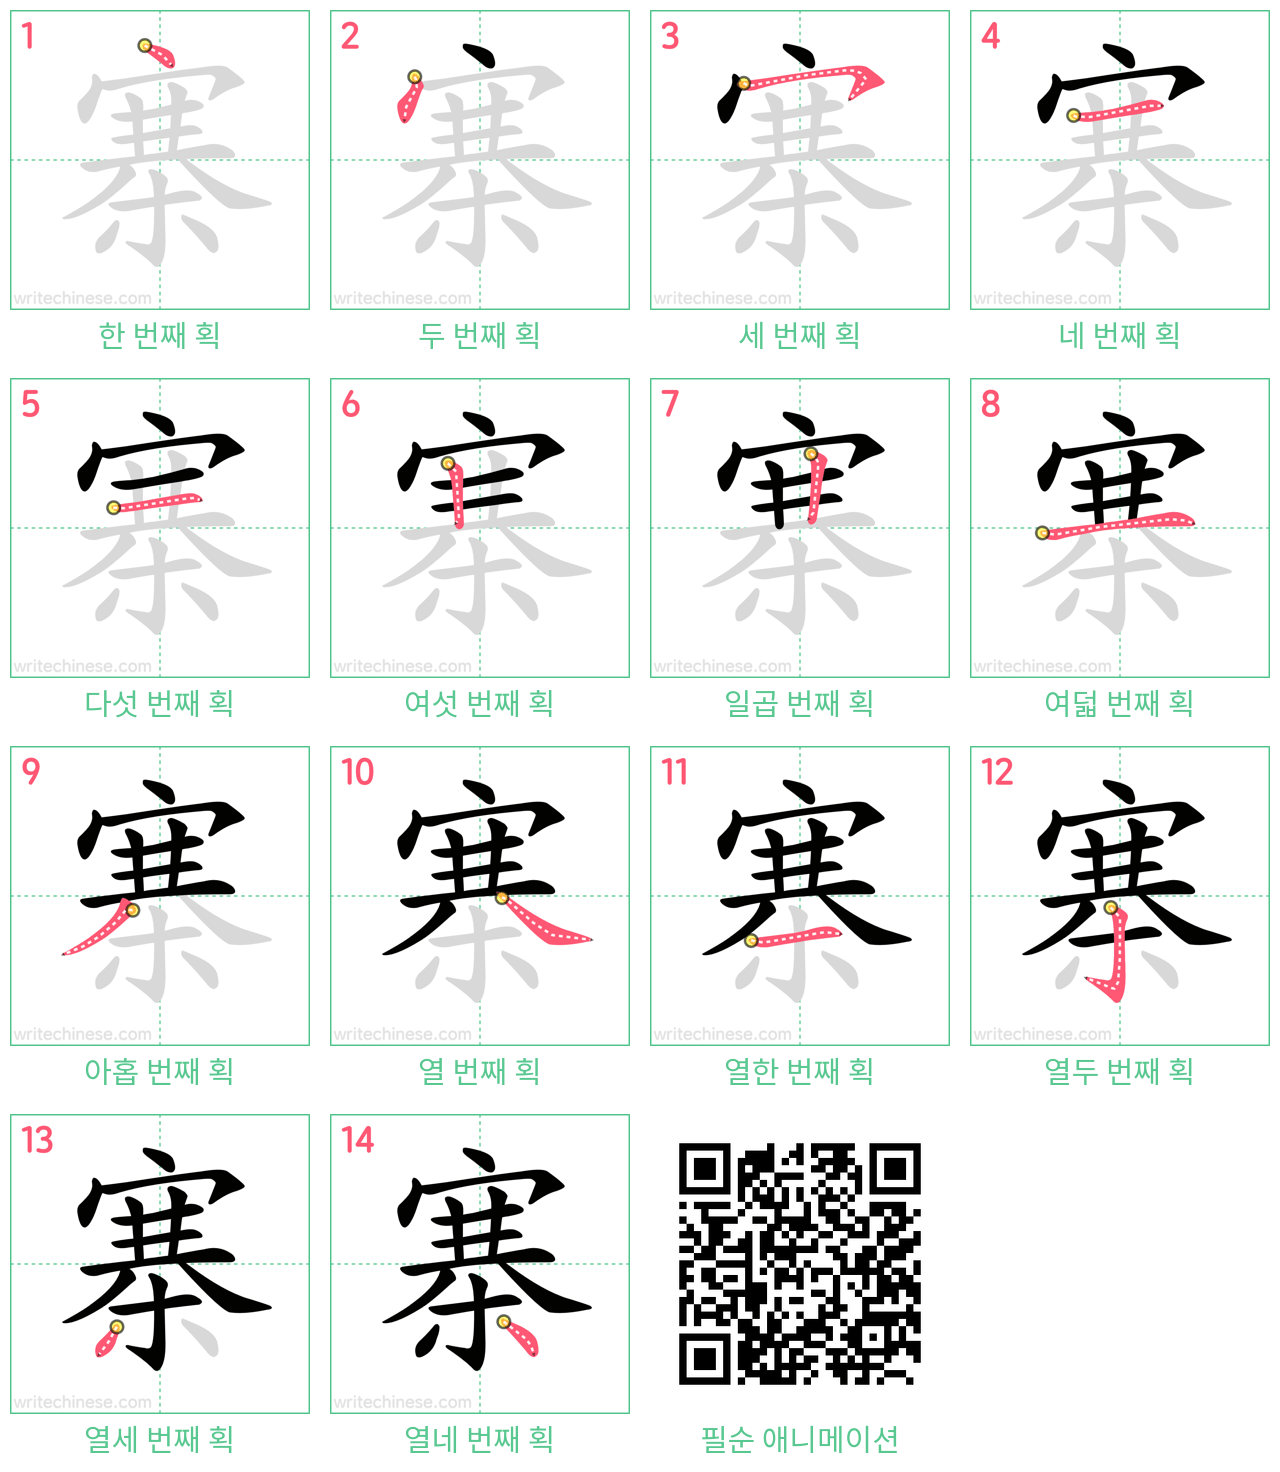 寨 step-by-step stroke order diagrams